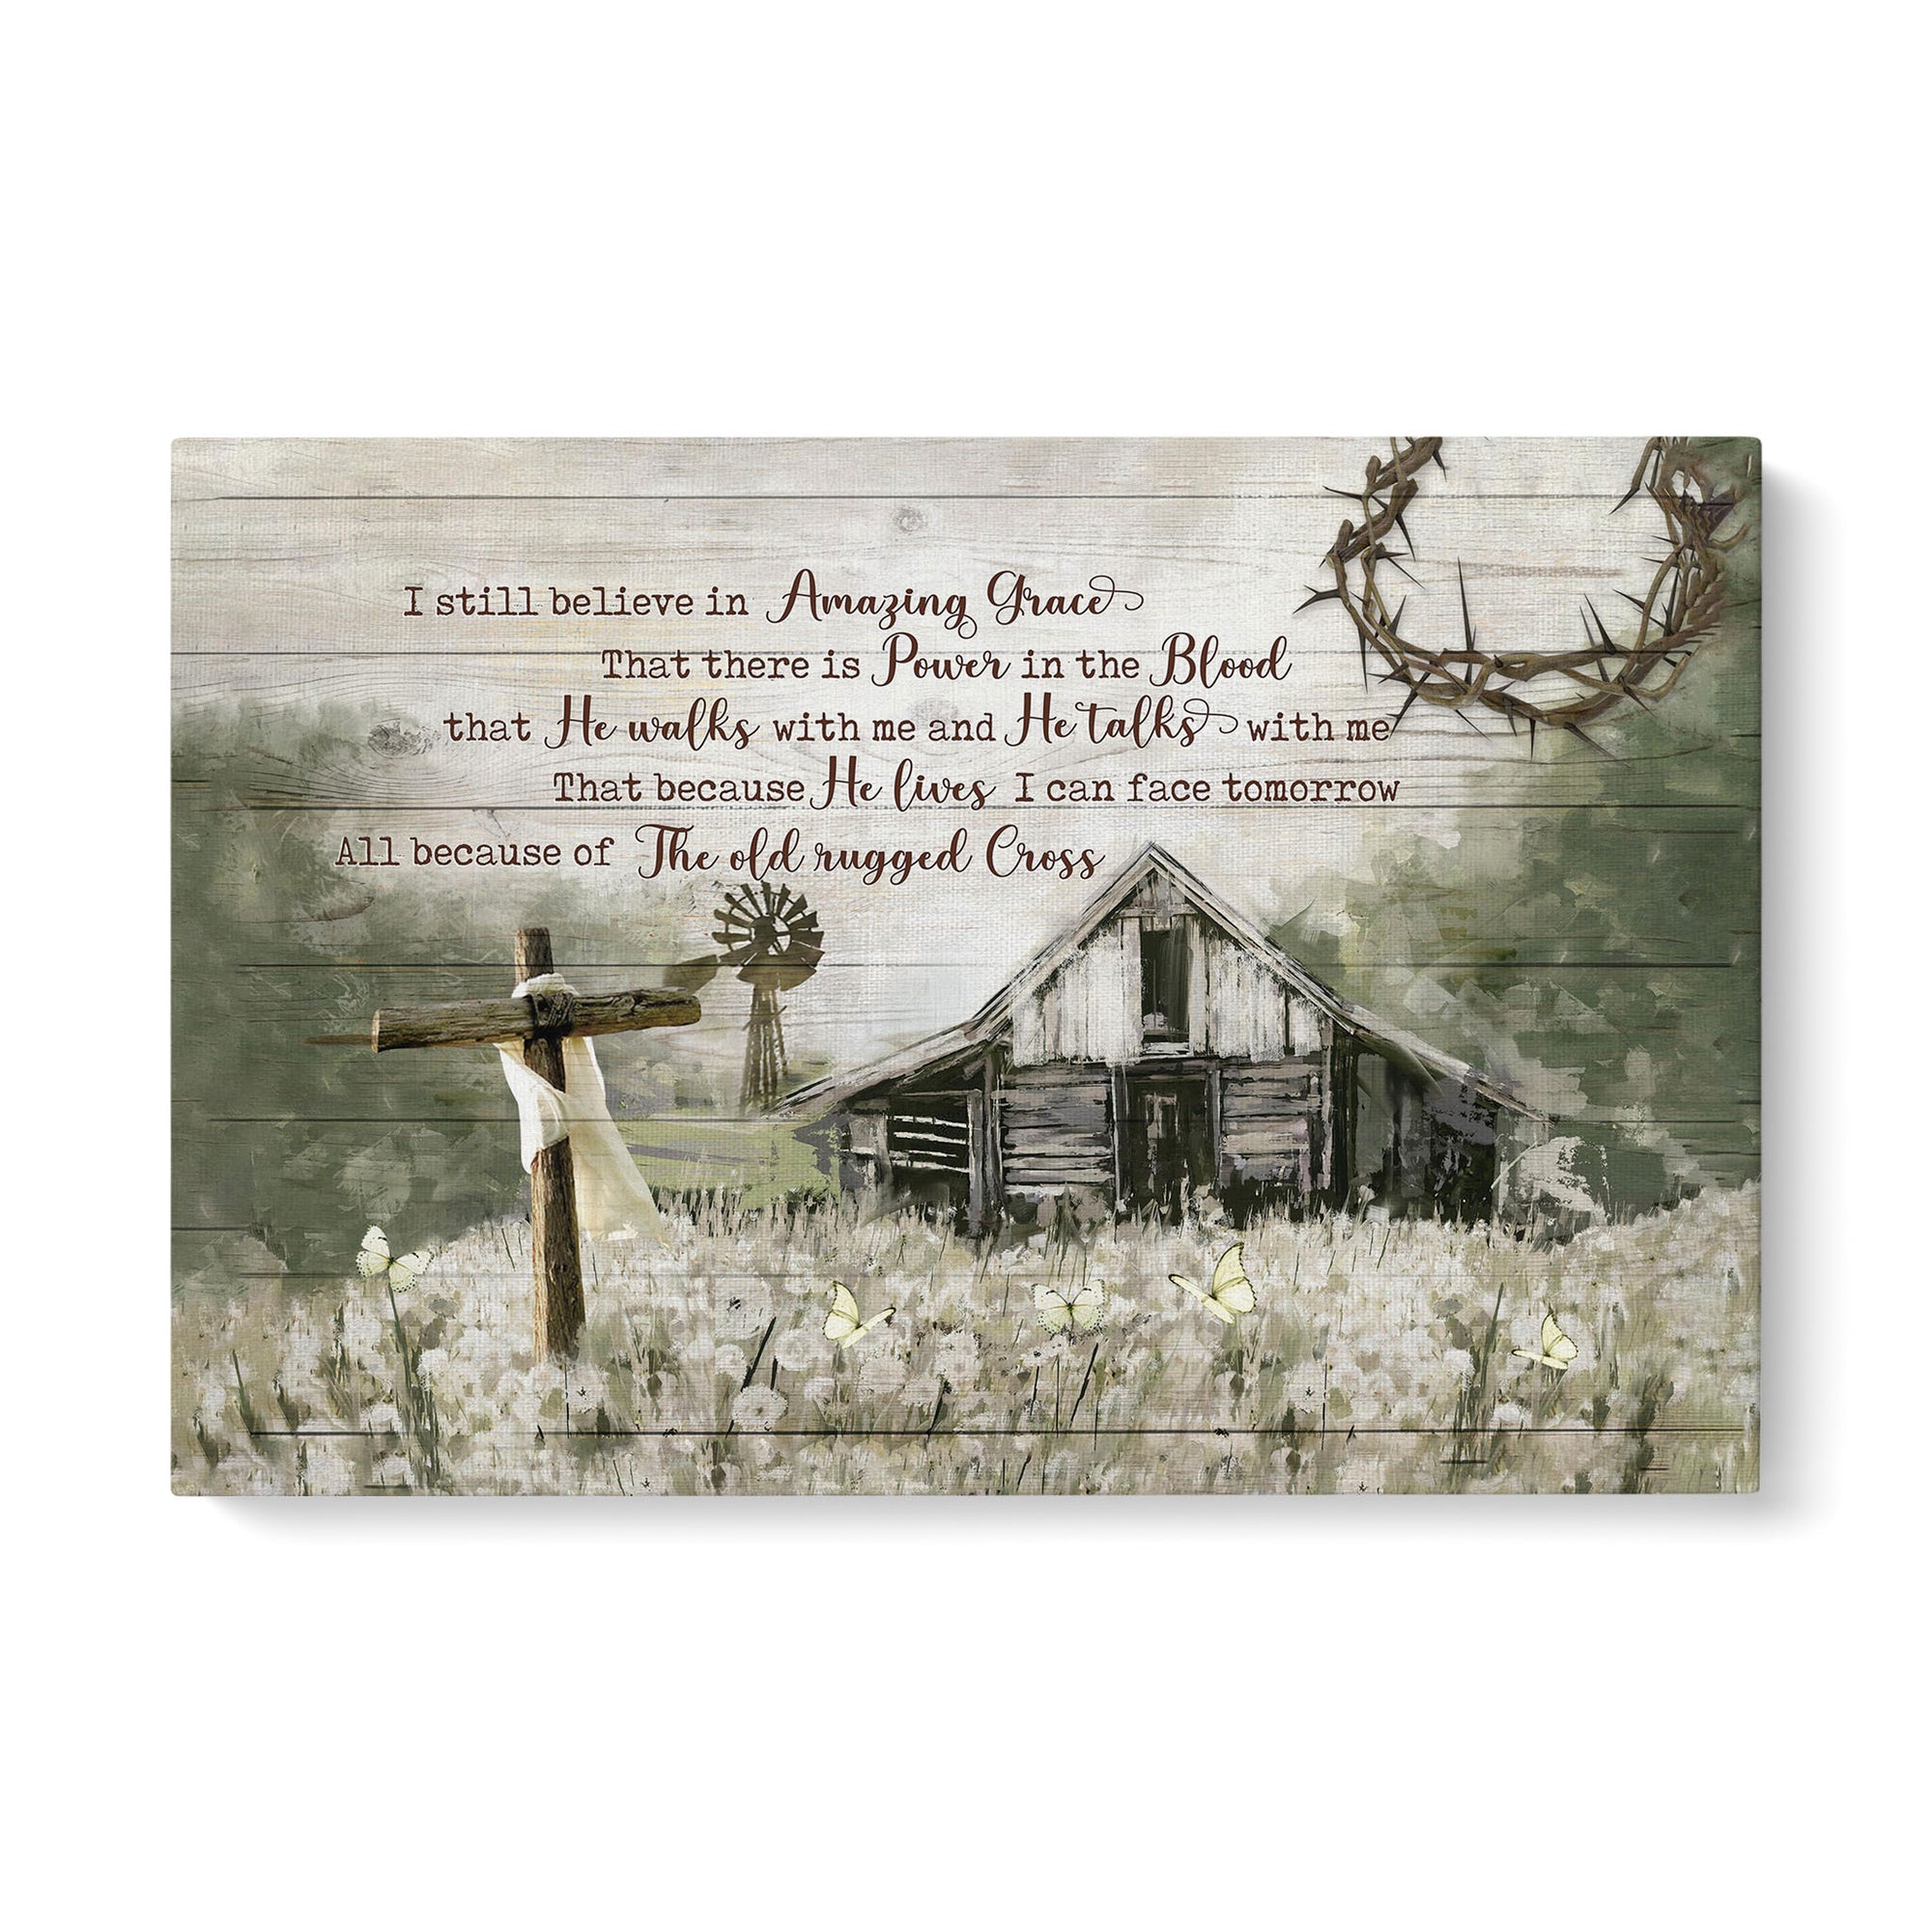 Barn painting, Flower field painting, I still believe in Amazing Grace 30x20in - Jesus Landscape Canvas Prints, Wall Art